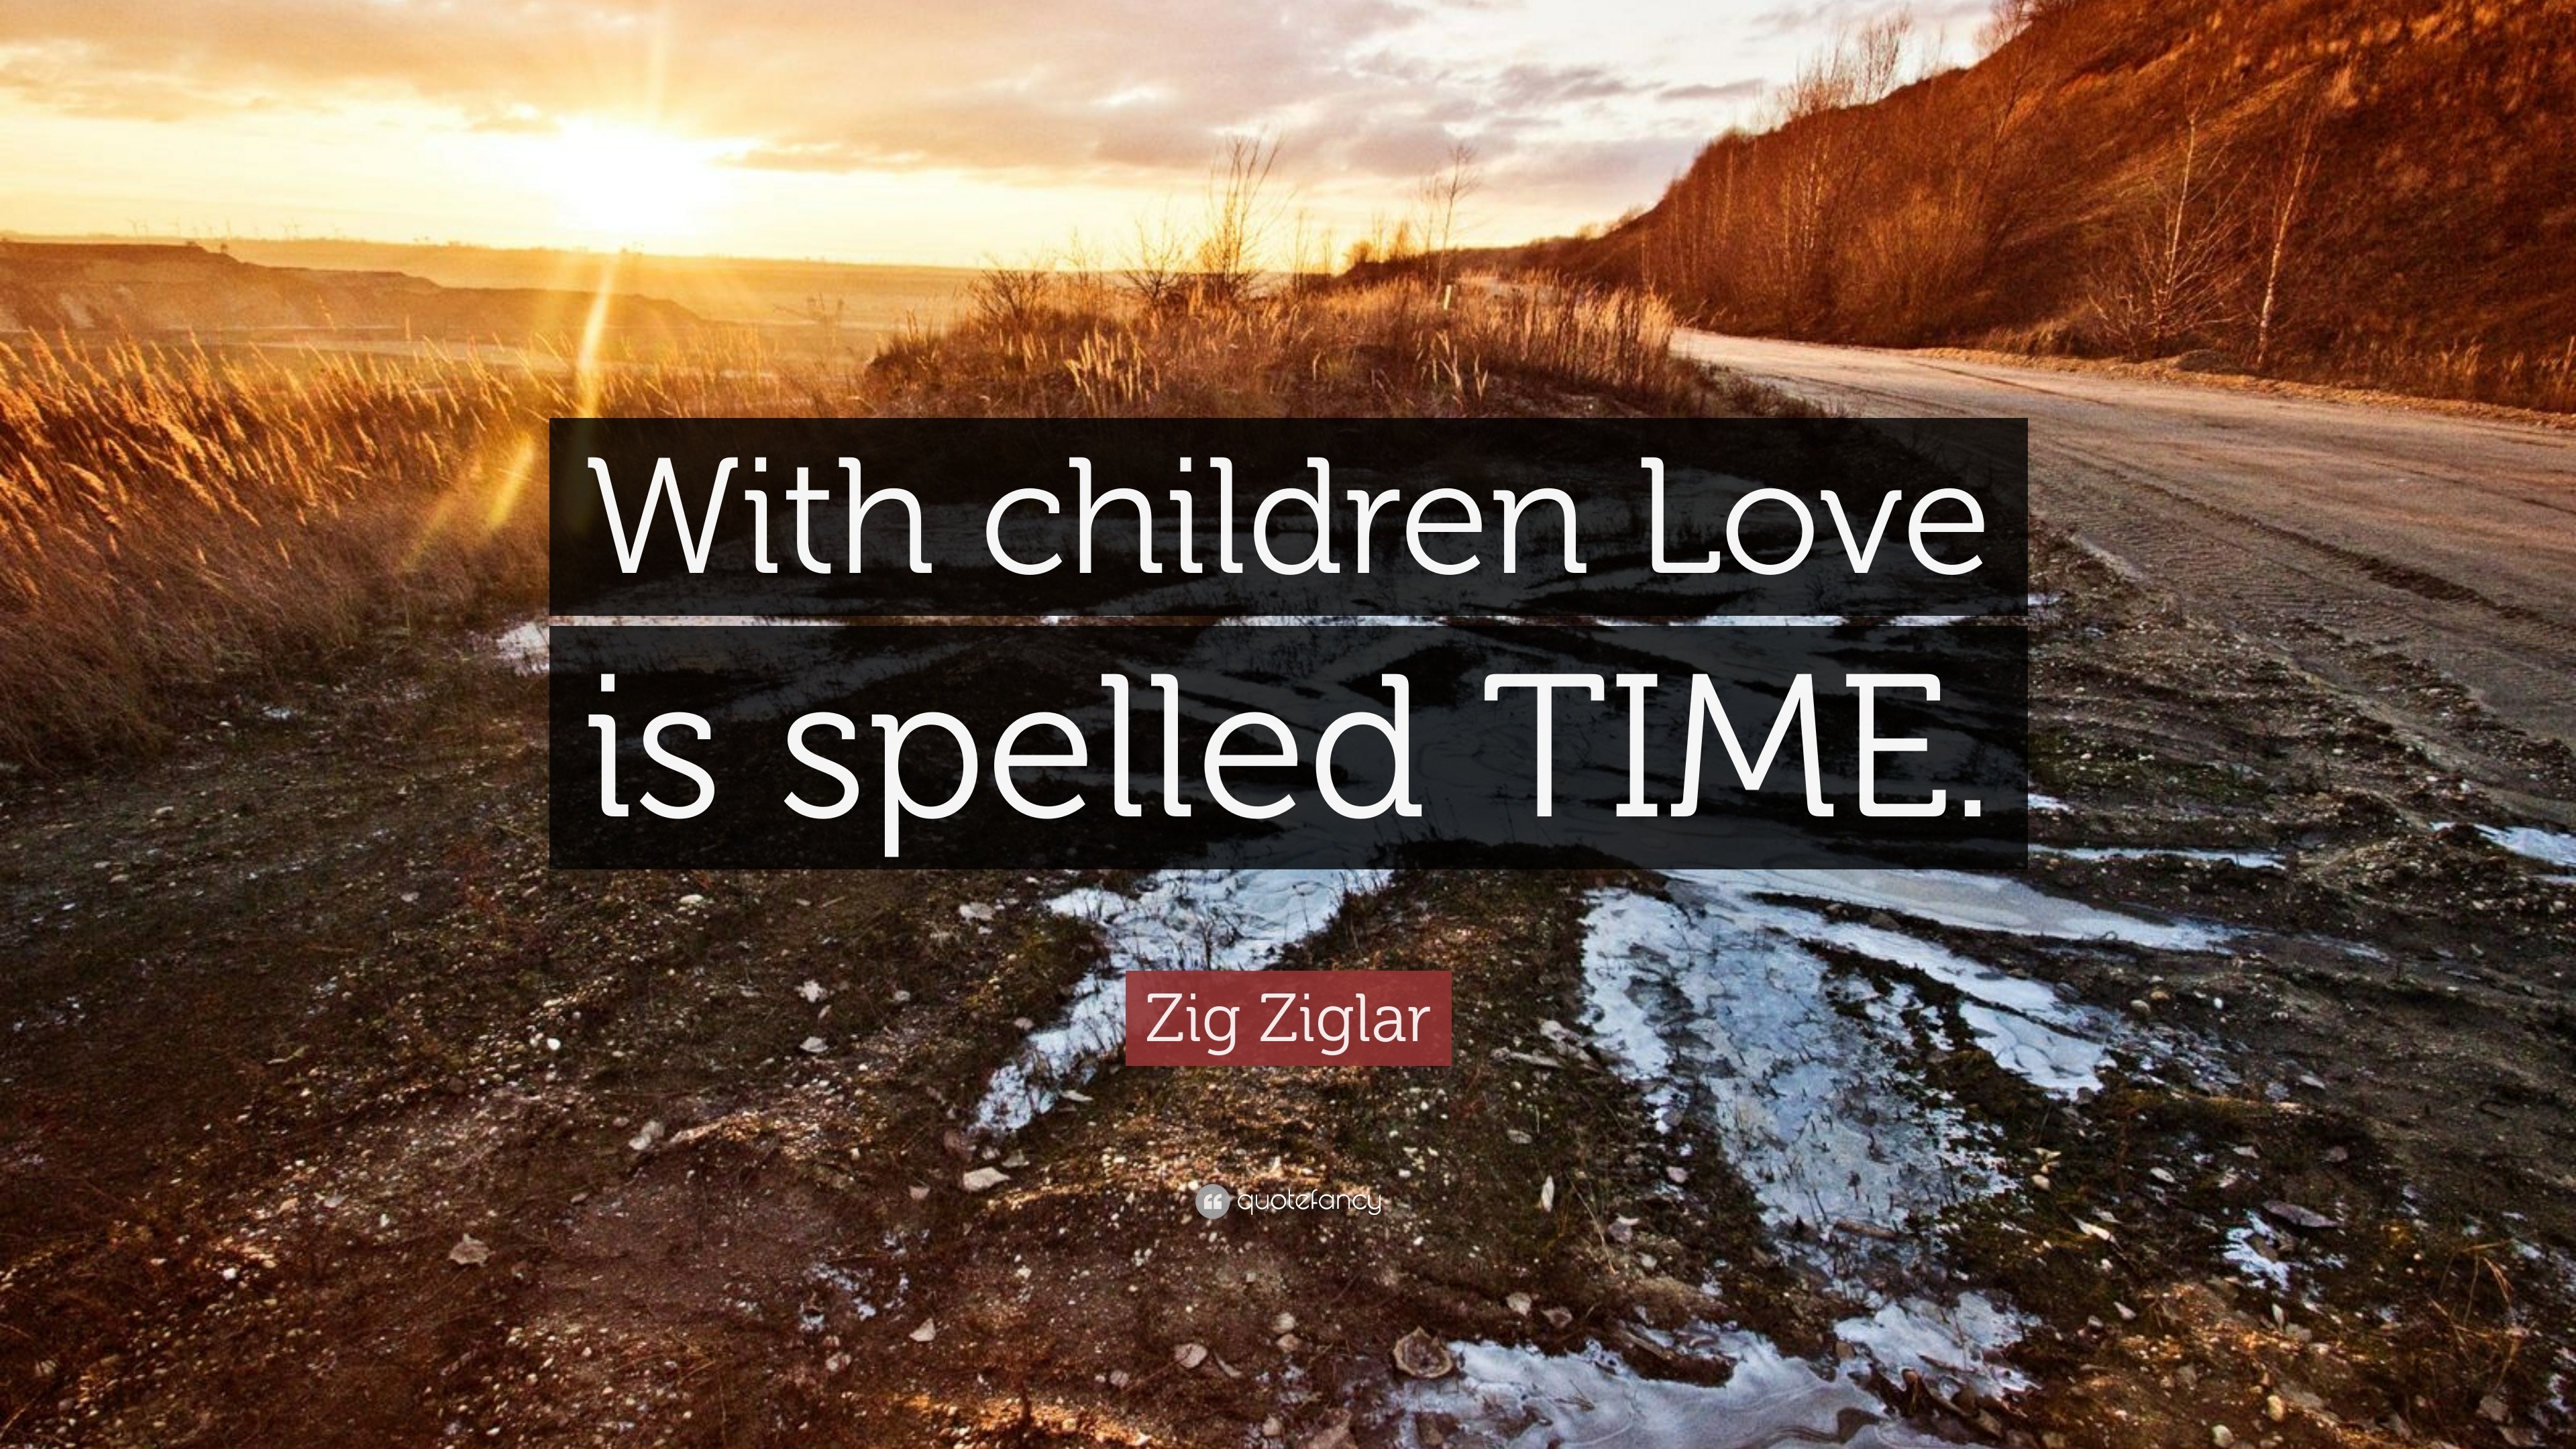 Zig Ziglar Quote “With children Love is spelled TIME ”